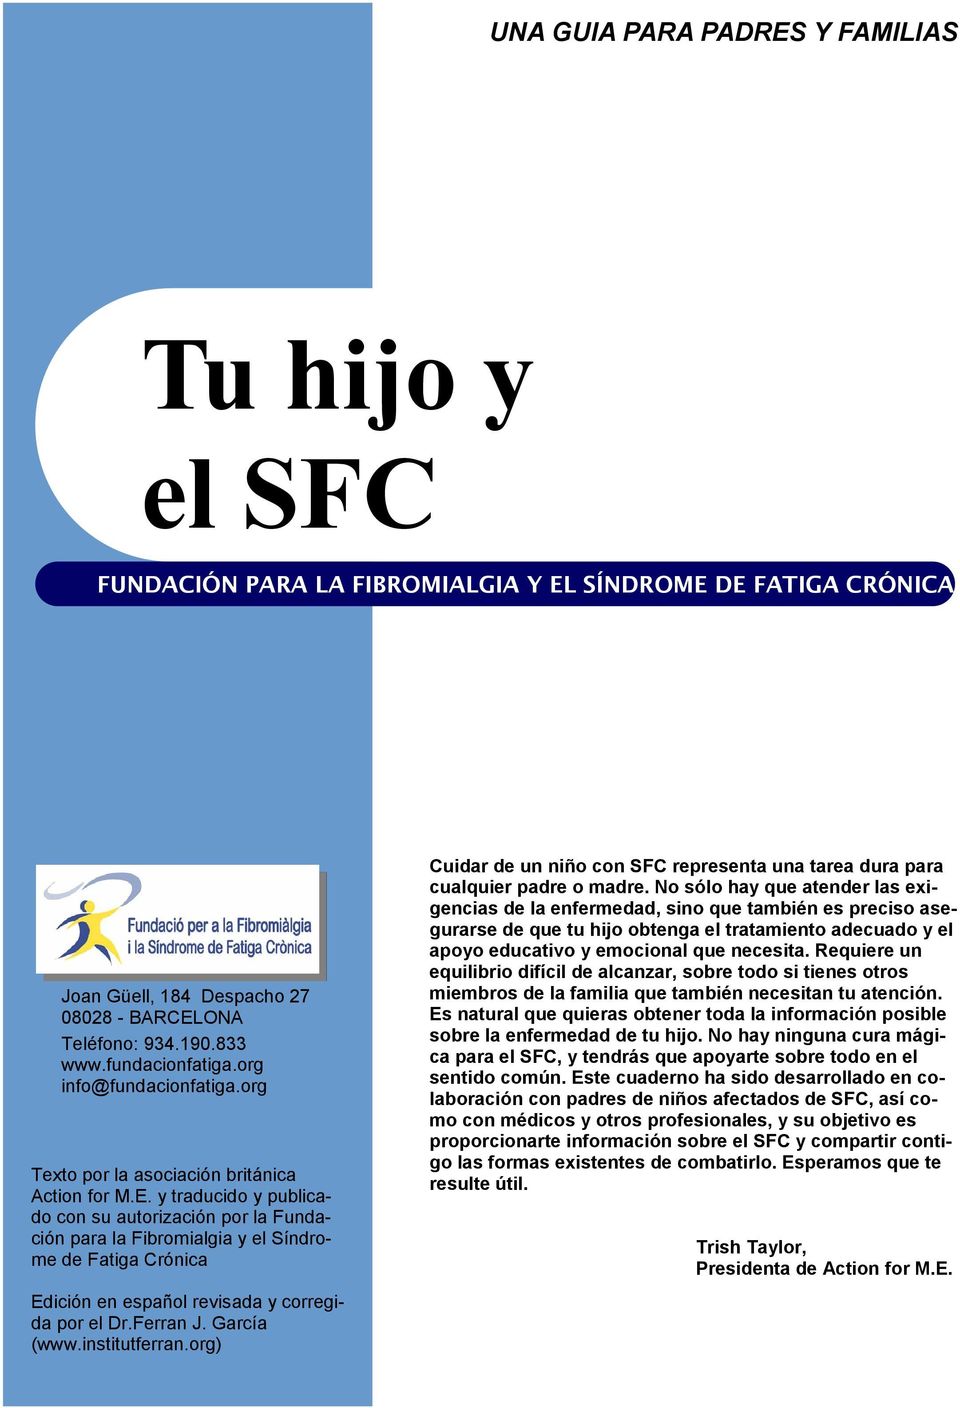 y traducido y publicado con su autorización por la Fundación para la Fibromialgia y el Síndrome de Fatiga Crónica Edición en español revisada y corregida por el Dr.Ferran J. García (www.